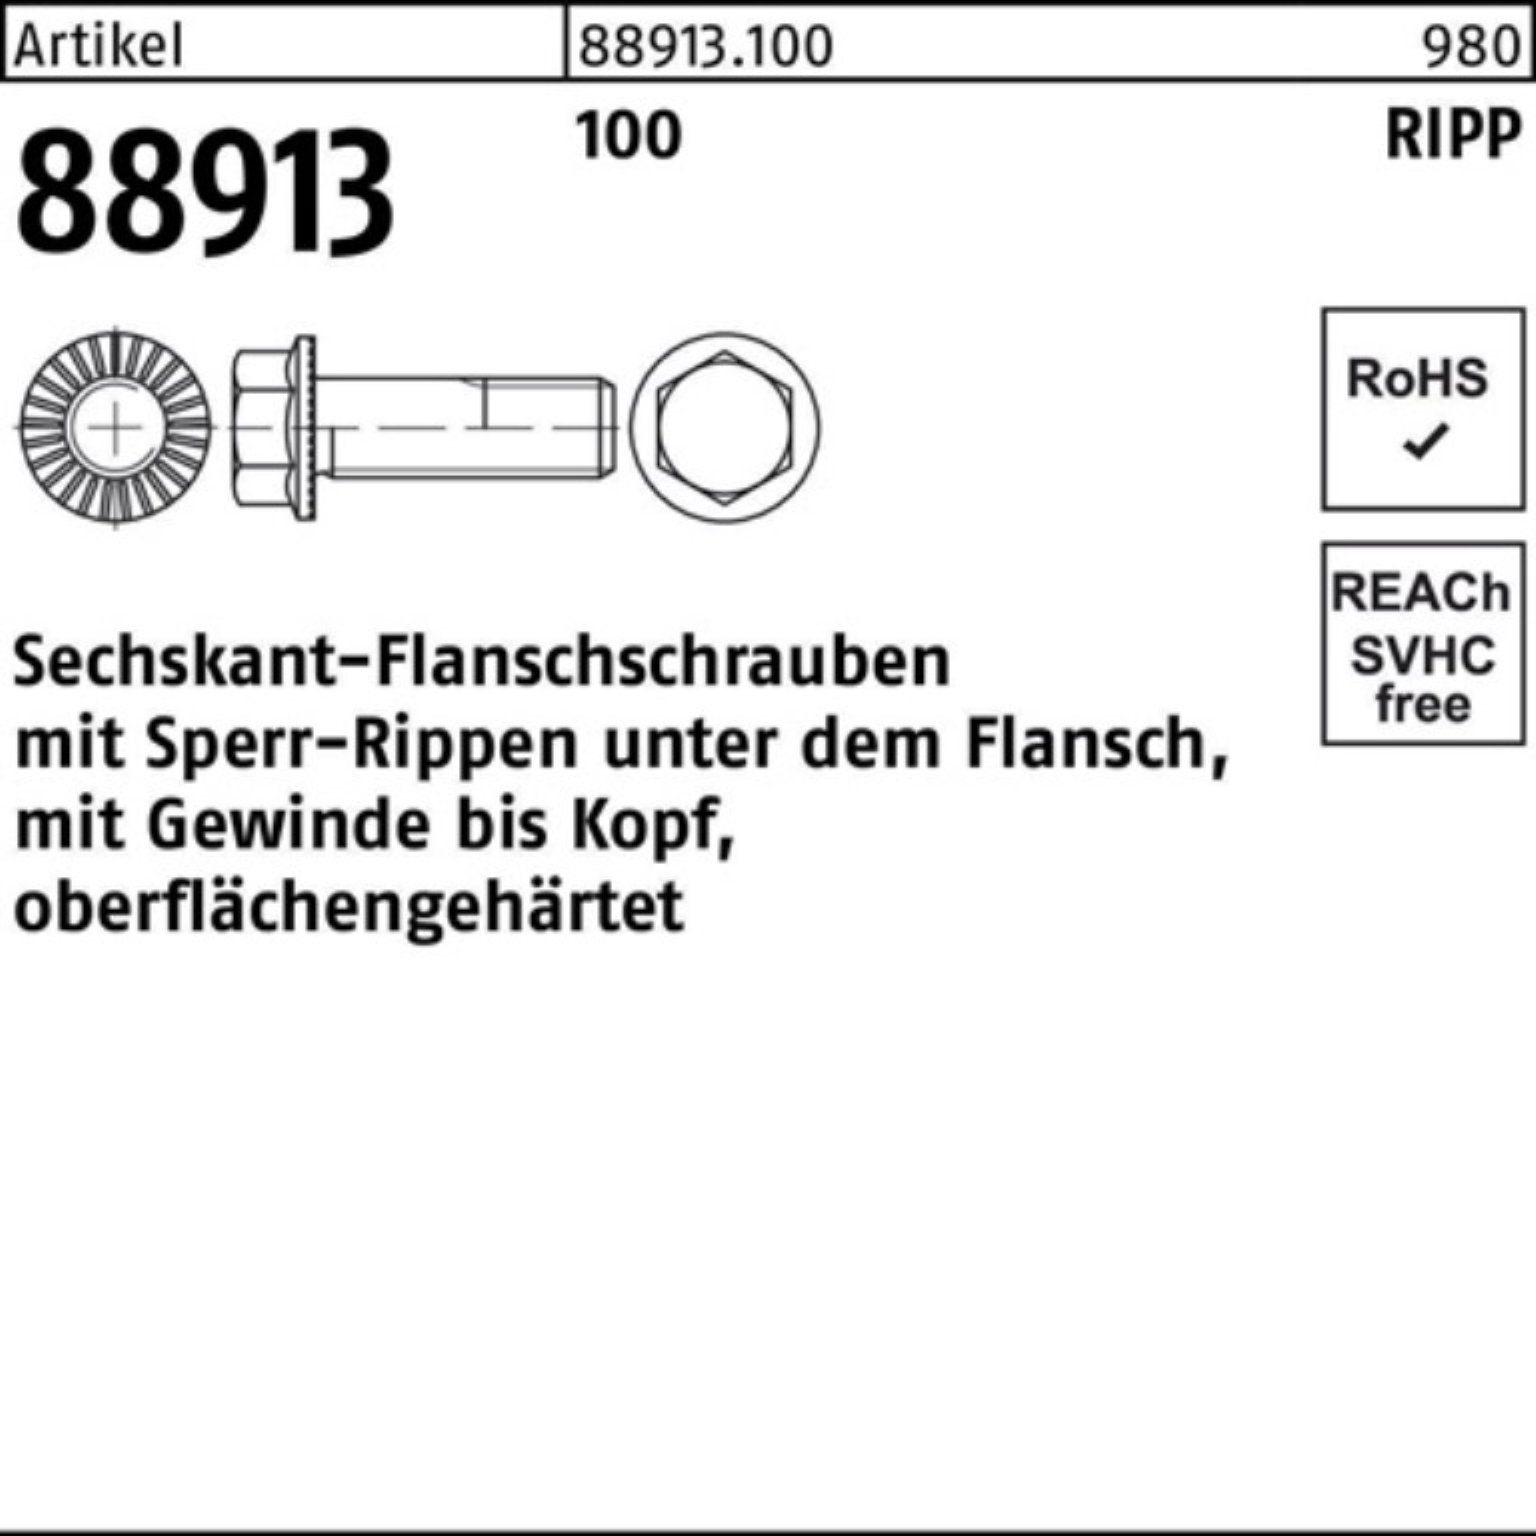 88913 2 VG R Pack Reyher Sechskantflanschschraube 100 Sperr-Ripp 200er Schraube 40 M8x